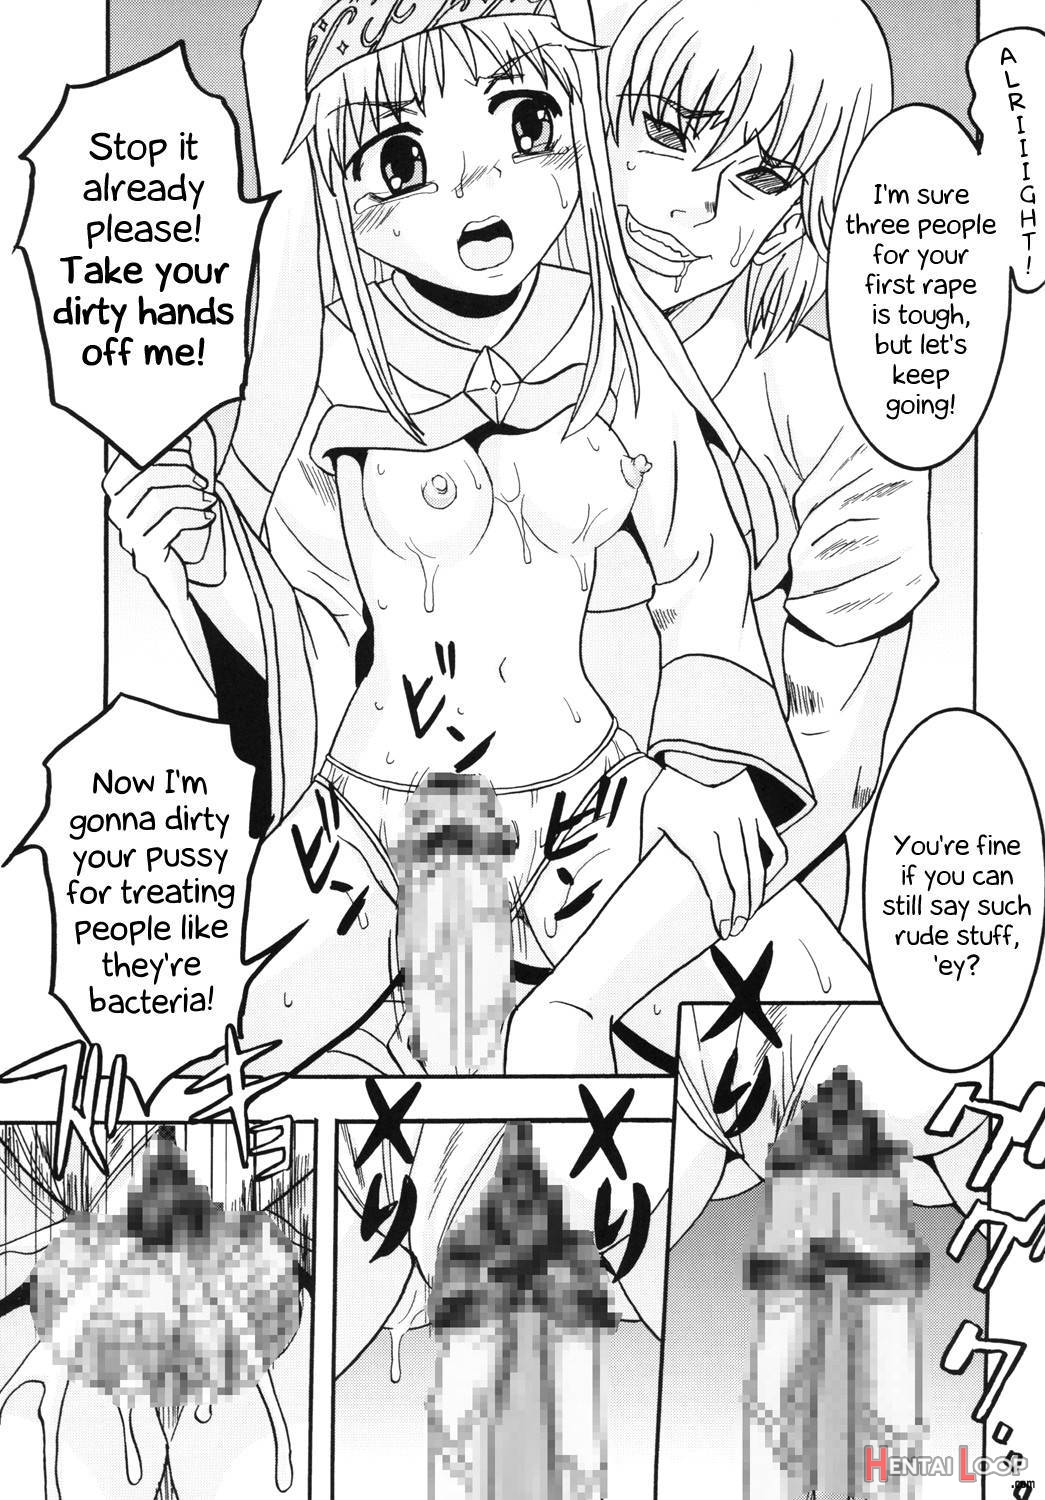 Toaru Otaku no Index #1 page 16